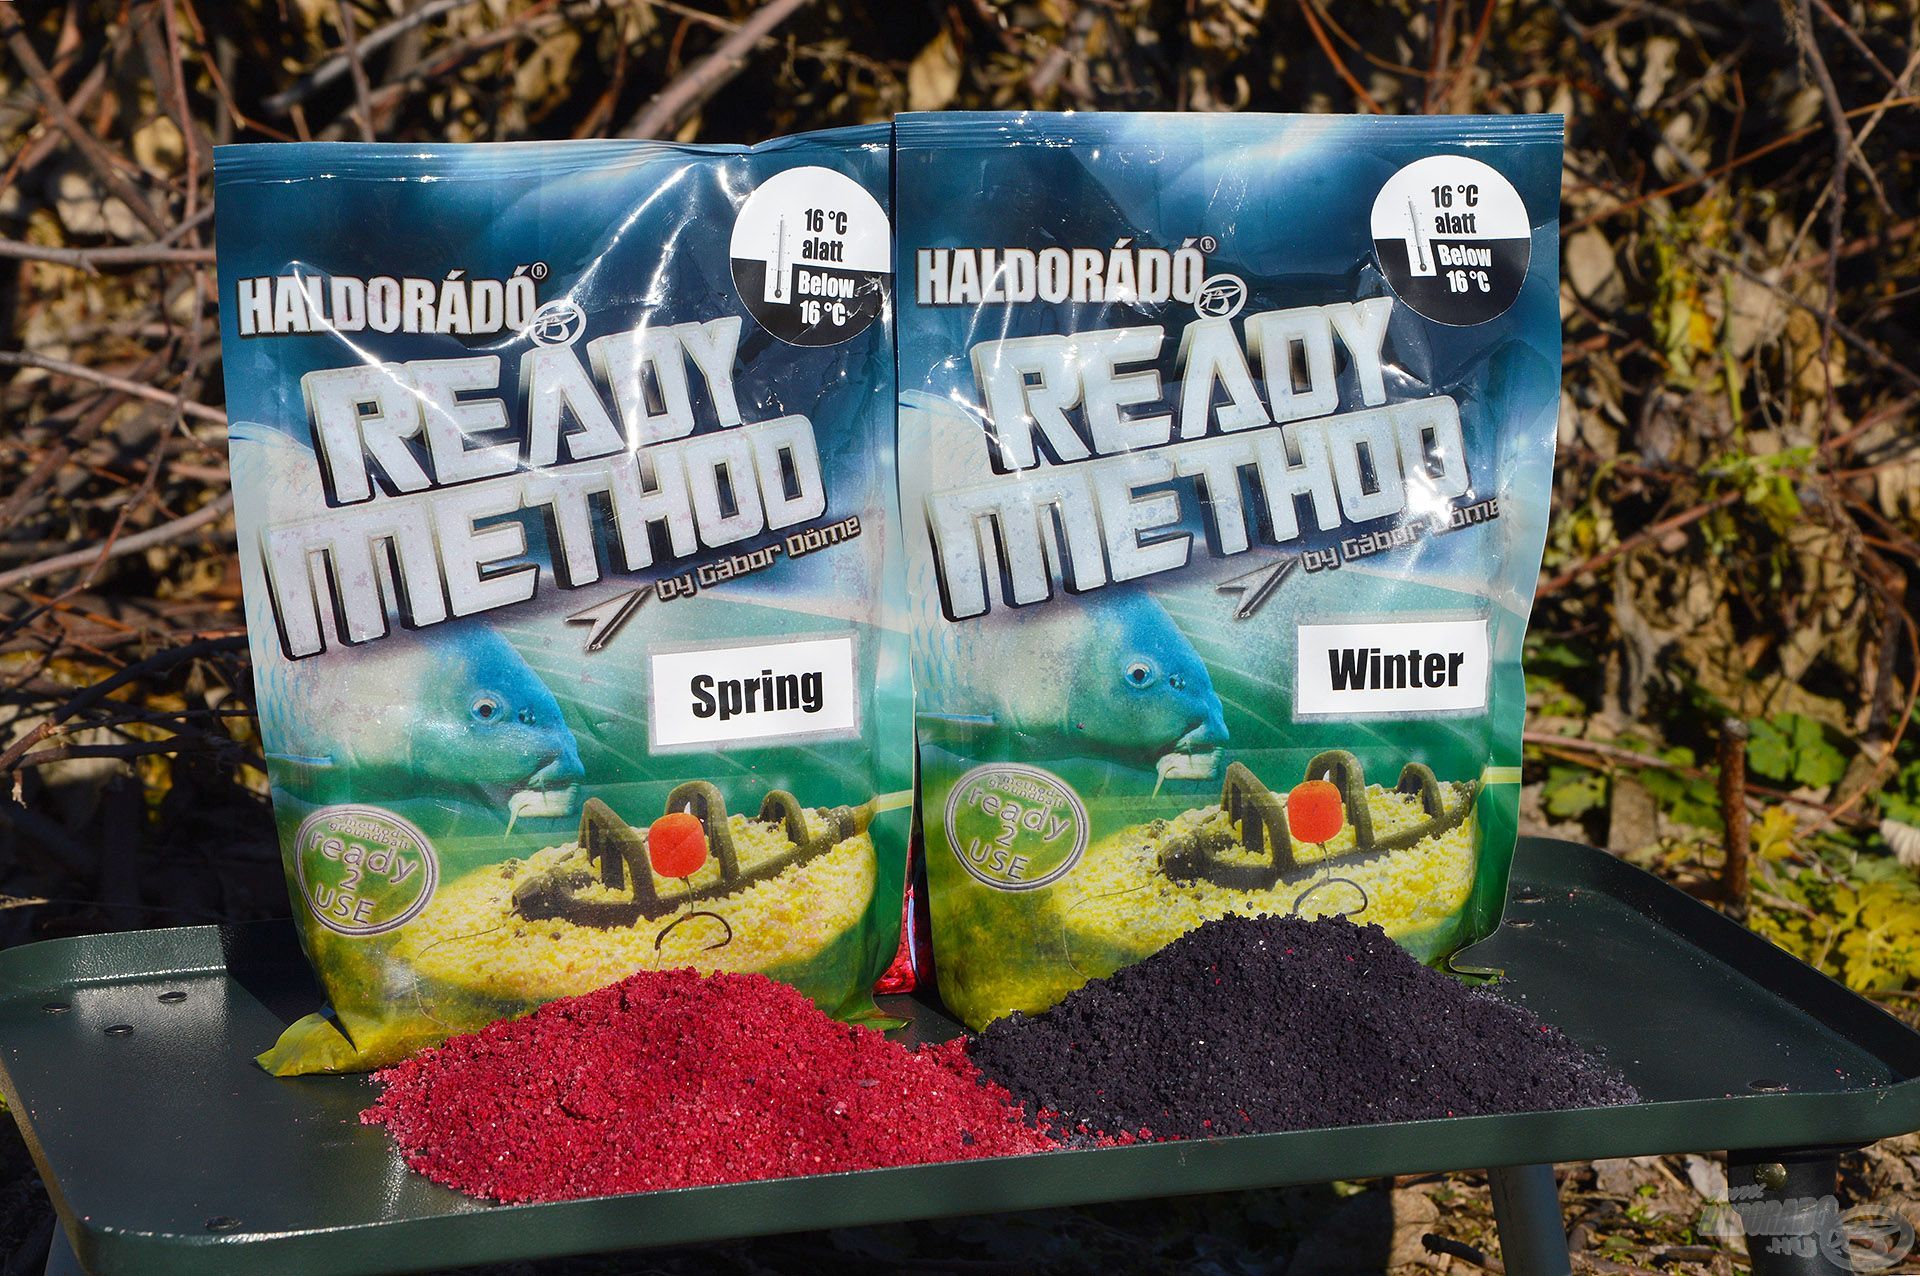 A Ready Method Winter és Spring tökéletes etetőanyagok a tavaszi hideg vagy már felmelegedő vizekre